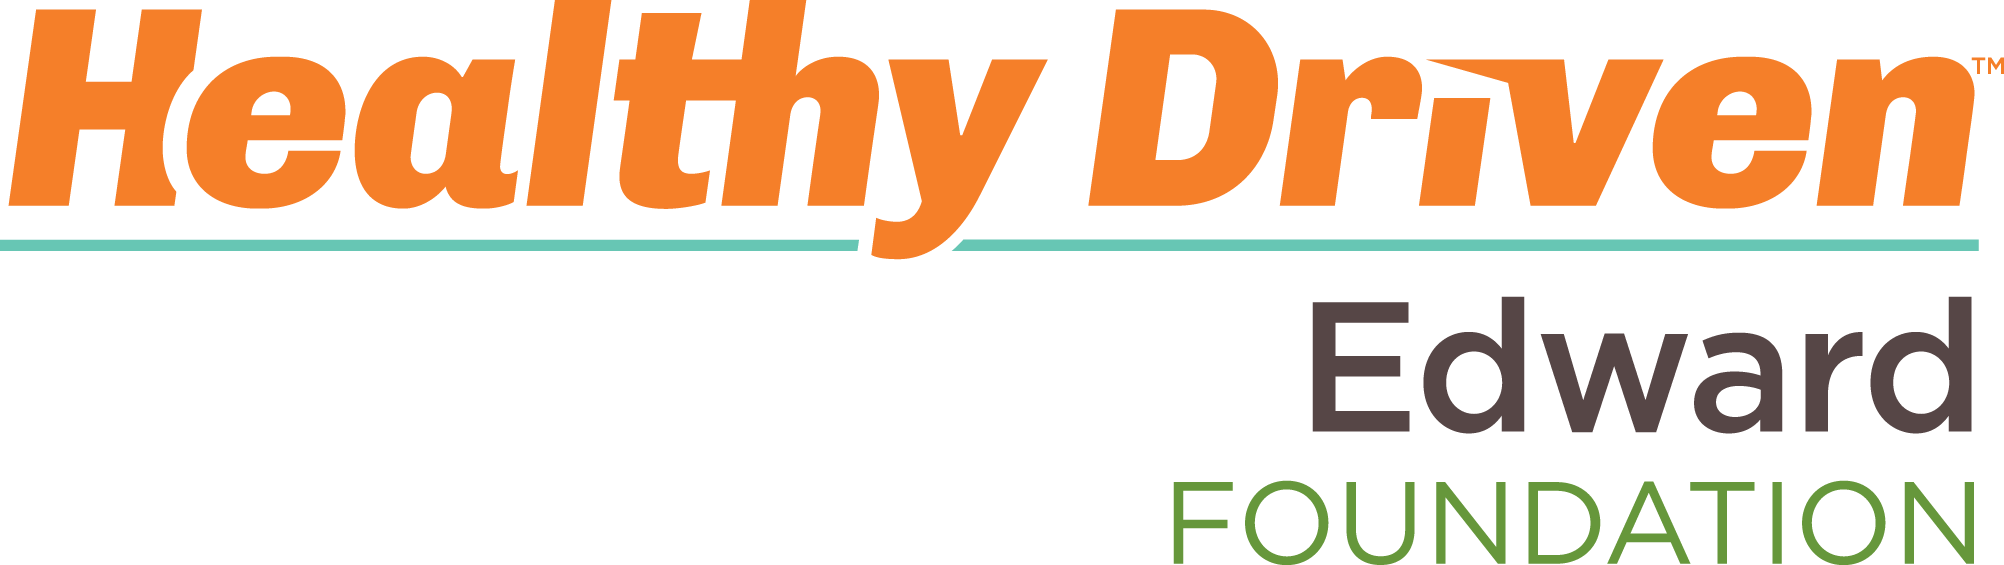 HD Edward Foundation Stacked Logo